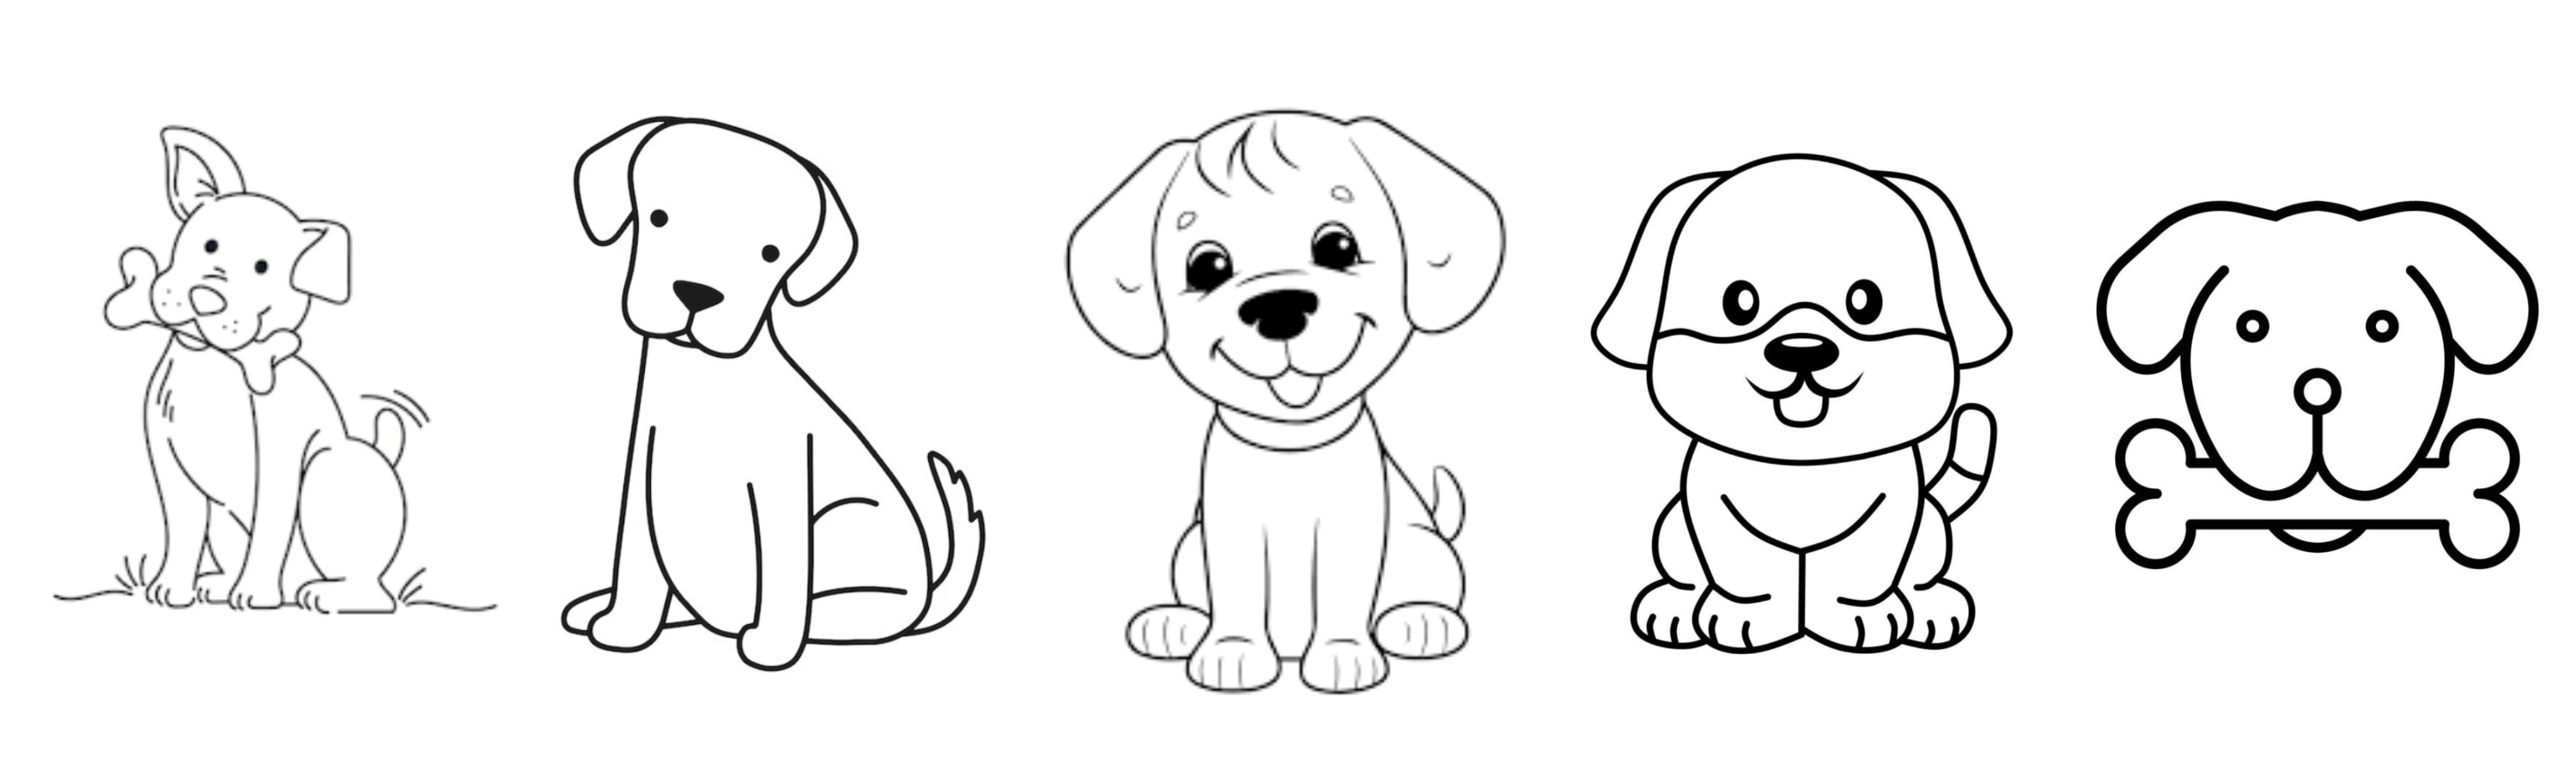 10 ideas de dibujos fáciles para hacer de perros